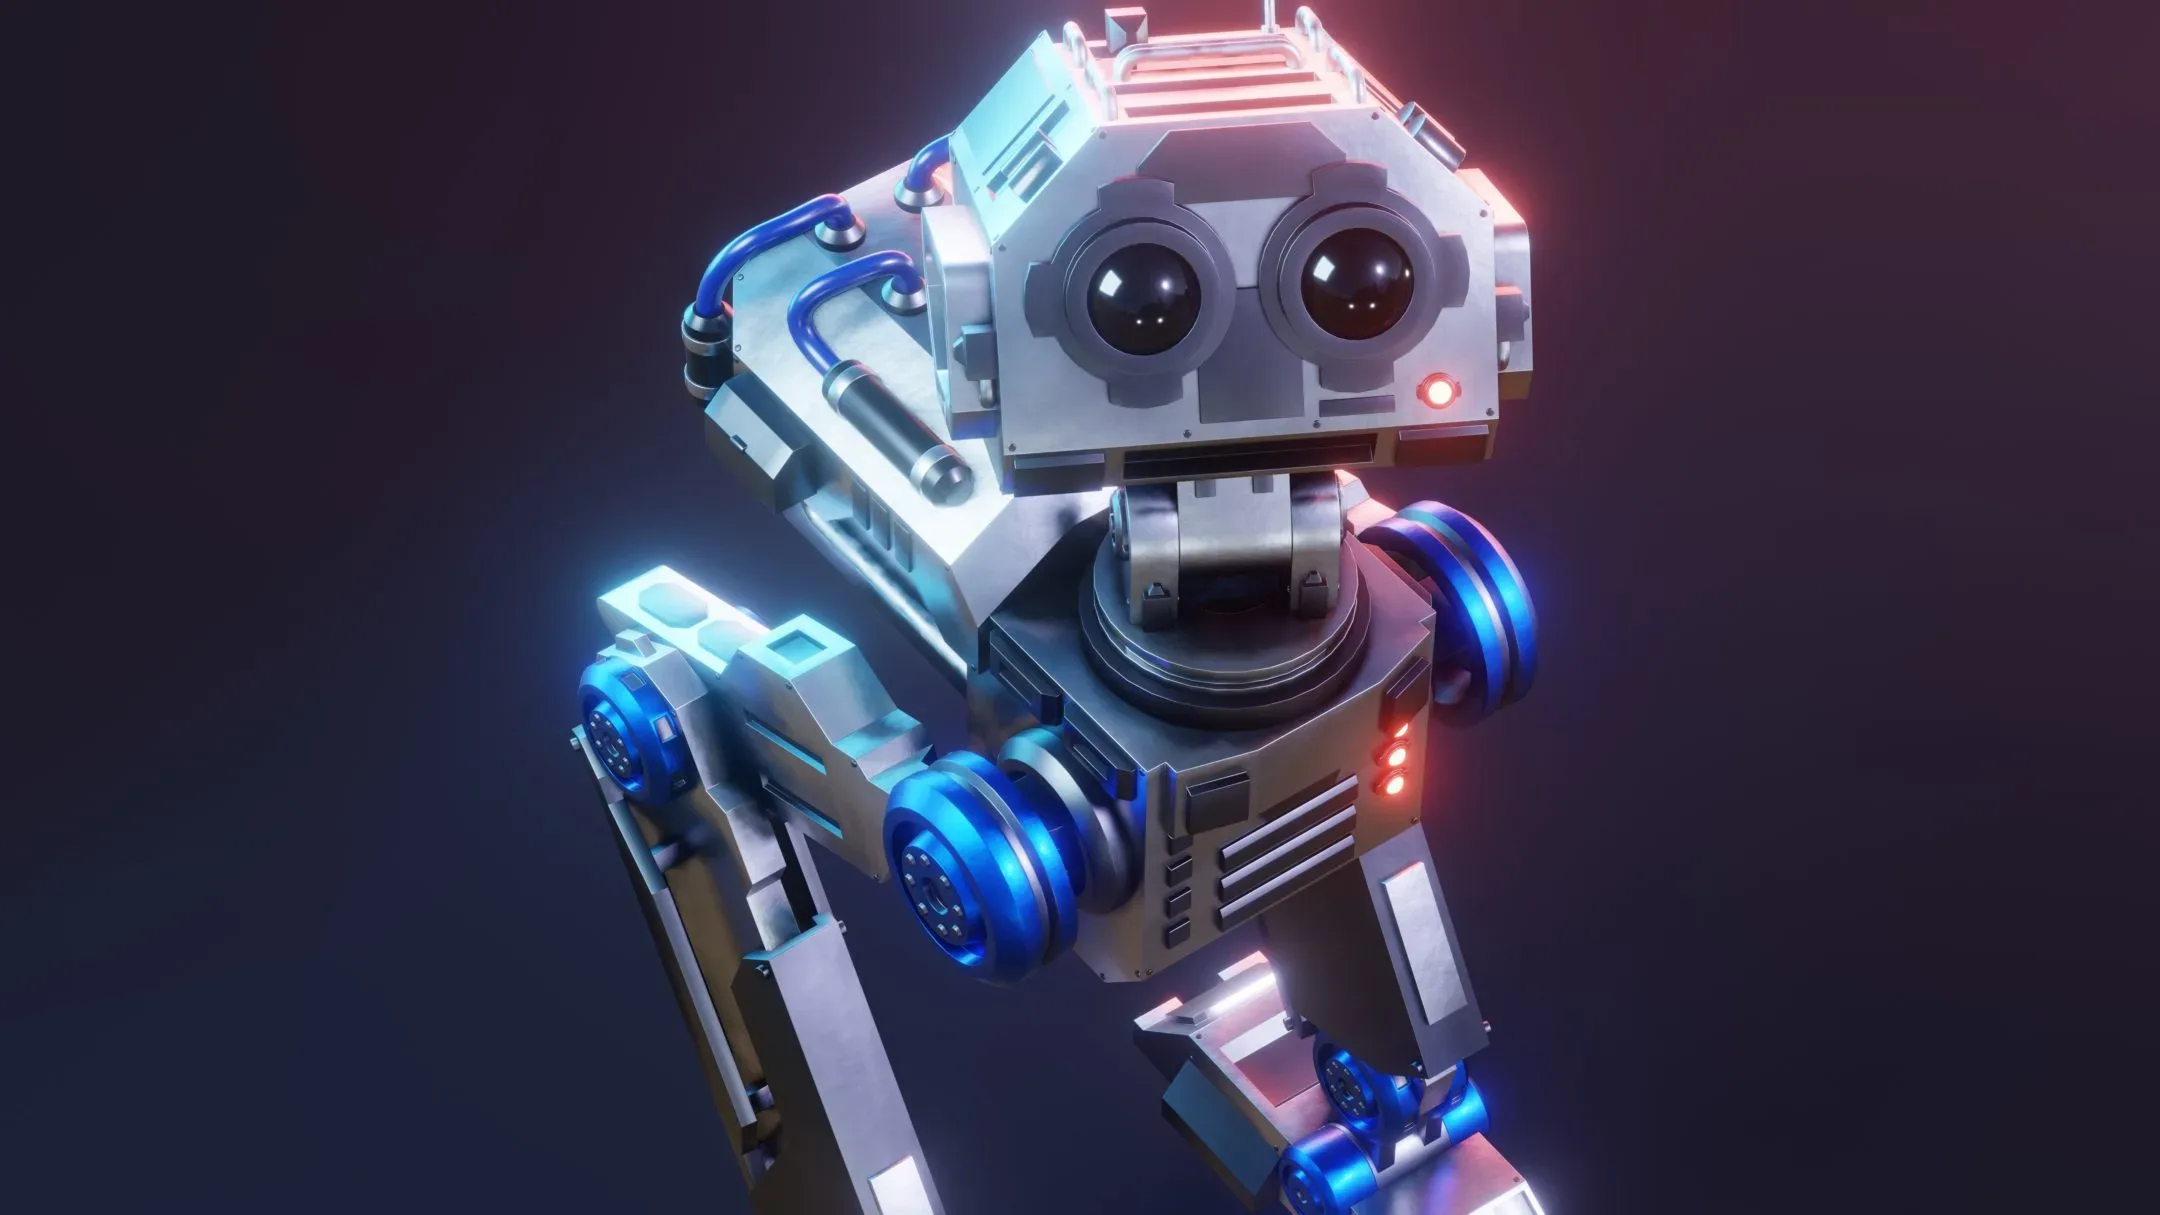 Sci-Fi Mech Robot - Rigged (Blender Eevee)